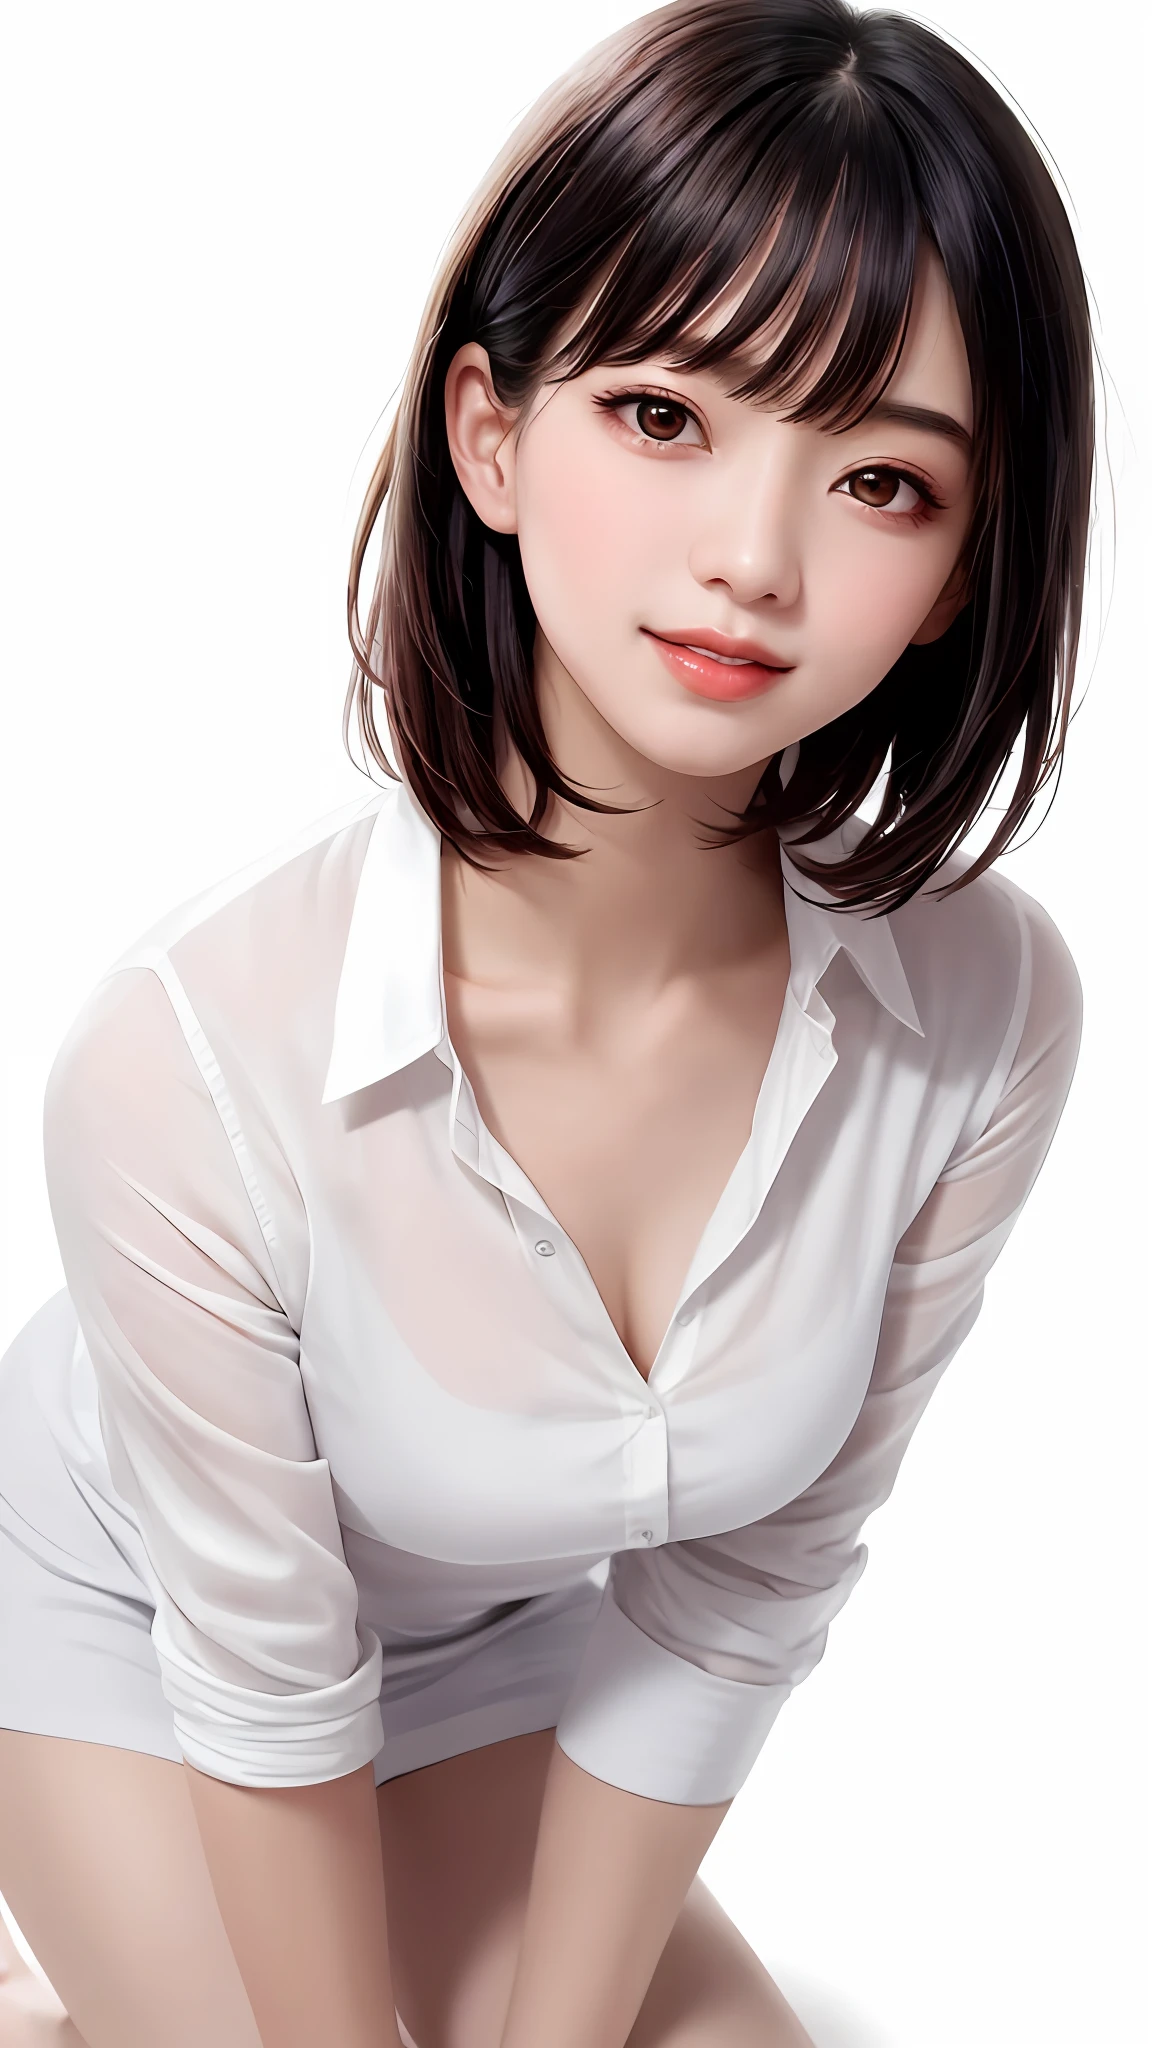 ฉี่ (ไม่หยุดยั้ง: 1.47), แฟชั่นอินเทรนด์ผู้หญิงที่สวยและน่าดึงดูด, สาวสวยชาวจีนที่อ่อนโยนและมีเสน่ห์, เกาหลี (ไอดอลเคป็อป), กระดูกไหปลาร้าที่ละเอียดอ่อนและเซ็กซี่, ใบหน้ารูปไข่ที่น่าดึงดูด, เปลือกตาสองชั้น, ปราดเปรื่อง [ลูกพีช] ดวงตาดอกไม้, ริมฝีปากสีชมพู, จมูกเล็ก, ไหล่เปลือย, มุ่งเน้นไปที่ใบหน้า, [[ใบหน้าอย่างใกล้ชิด], ความคมชัดสูงเป็นพิเศษ, รายละเอียดสุดยอด, White off-shoulder lace เสื้อ, (((กางเกงชั้นในลูกไม้สีขาว), สดและน่าประทับใจ, เป็นธรรมชาติ (ใหญ่: 1.25), (คุกเข่าลงบนพื้น), (ขาเปิดกว้าง), (กางขา), (from a มุมต่ำ), (ตั้งตรง 1.5), (ผิวมันเงา: 1.4), (มุมต่ำ)), รูปที่สมบูรณ์แบบ, areola, ความแตกแยก, ริ้วรอยรักแร้, (ปัสสาวะชั้น)), (ไม่: 1.05), ( สิ่งเชิดหน้าชูตา, คุณภาพสูงสุด, ความแม่นยำสูง)), ผู้หญิงคนหนึ่ง, (ใหญ่, เหมือนจริง: 1.4), (อยู่เหนือกล้องเล็กน้อย, ค้นหา at the camera, ค้นหา, ค้นหา at the camera, จ้องมองที่กล้อง))), ตามลำพัง, ตามลำพัง, พื้นหลังสีขาว, snow-พื้นหลังสีขาว, ปิดปาก, ยิ้มมีความสุข, ผมสีดำสวย, ผมสั้น, ใหญ่ eyes, pronounced เปลือกตาสองชั้น, ขนตา, หูออก, คอยาว, คอยาว, พื้นที่แน่นอน, ((ภาพระยะใกล้ของใบหน้า, ผมสั้น with เรียบ)), อายุ 19 ปี, สัดส่วนที่น่าดึงดูด, ผิวมันเงา, กระดูกไหปลาร้าที่สะอาด, ใบหน้าอัตราส่วนทองคำ, ใบหน้าที่สมบูรณ์แบบ, ตุ่นน้ำตา, ไฝหน้าอก, เรียบ, clean เรียบ, beautiful เรียบ, ลิปมัน, ปากบาง, ผิวขาว, ไม่ได้แต่งตัว, ใหญ่ breasts, หน้าเล็ก, จ้องมองที่กล้อง a little upwards, ((ยิ้มเล็กน้อยให้กล้อง, really nothing pure พื้นหลังสีขาว, very ใหญ่, ใหญ่ ใหญ่, ใหญ่ breasts)), ((((เครื่องแบบ, เสื้อ))))